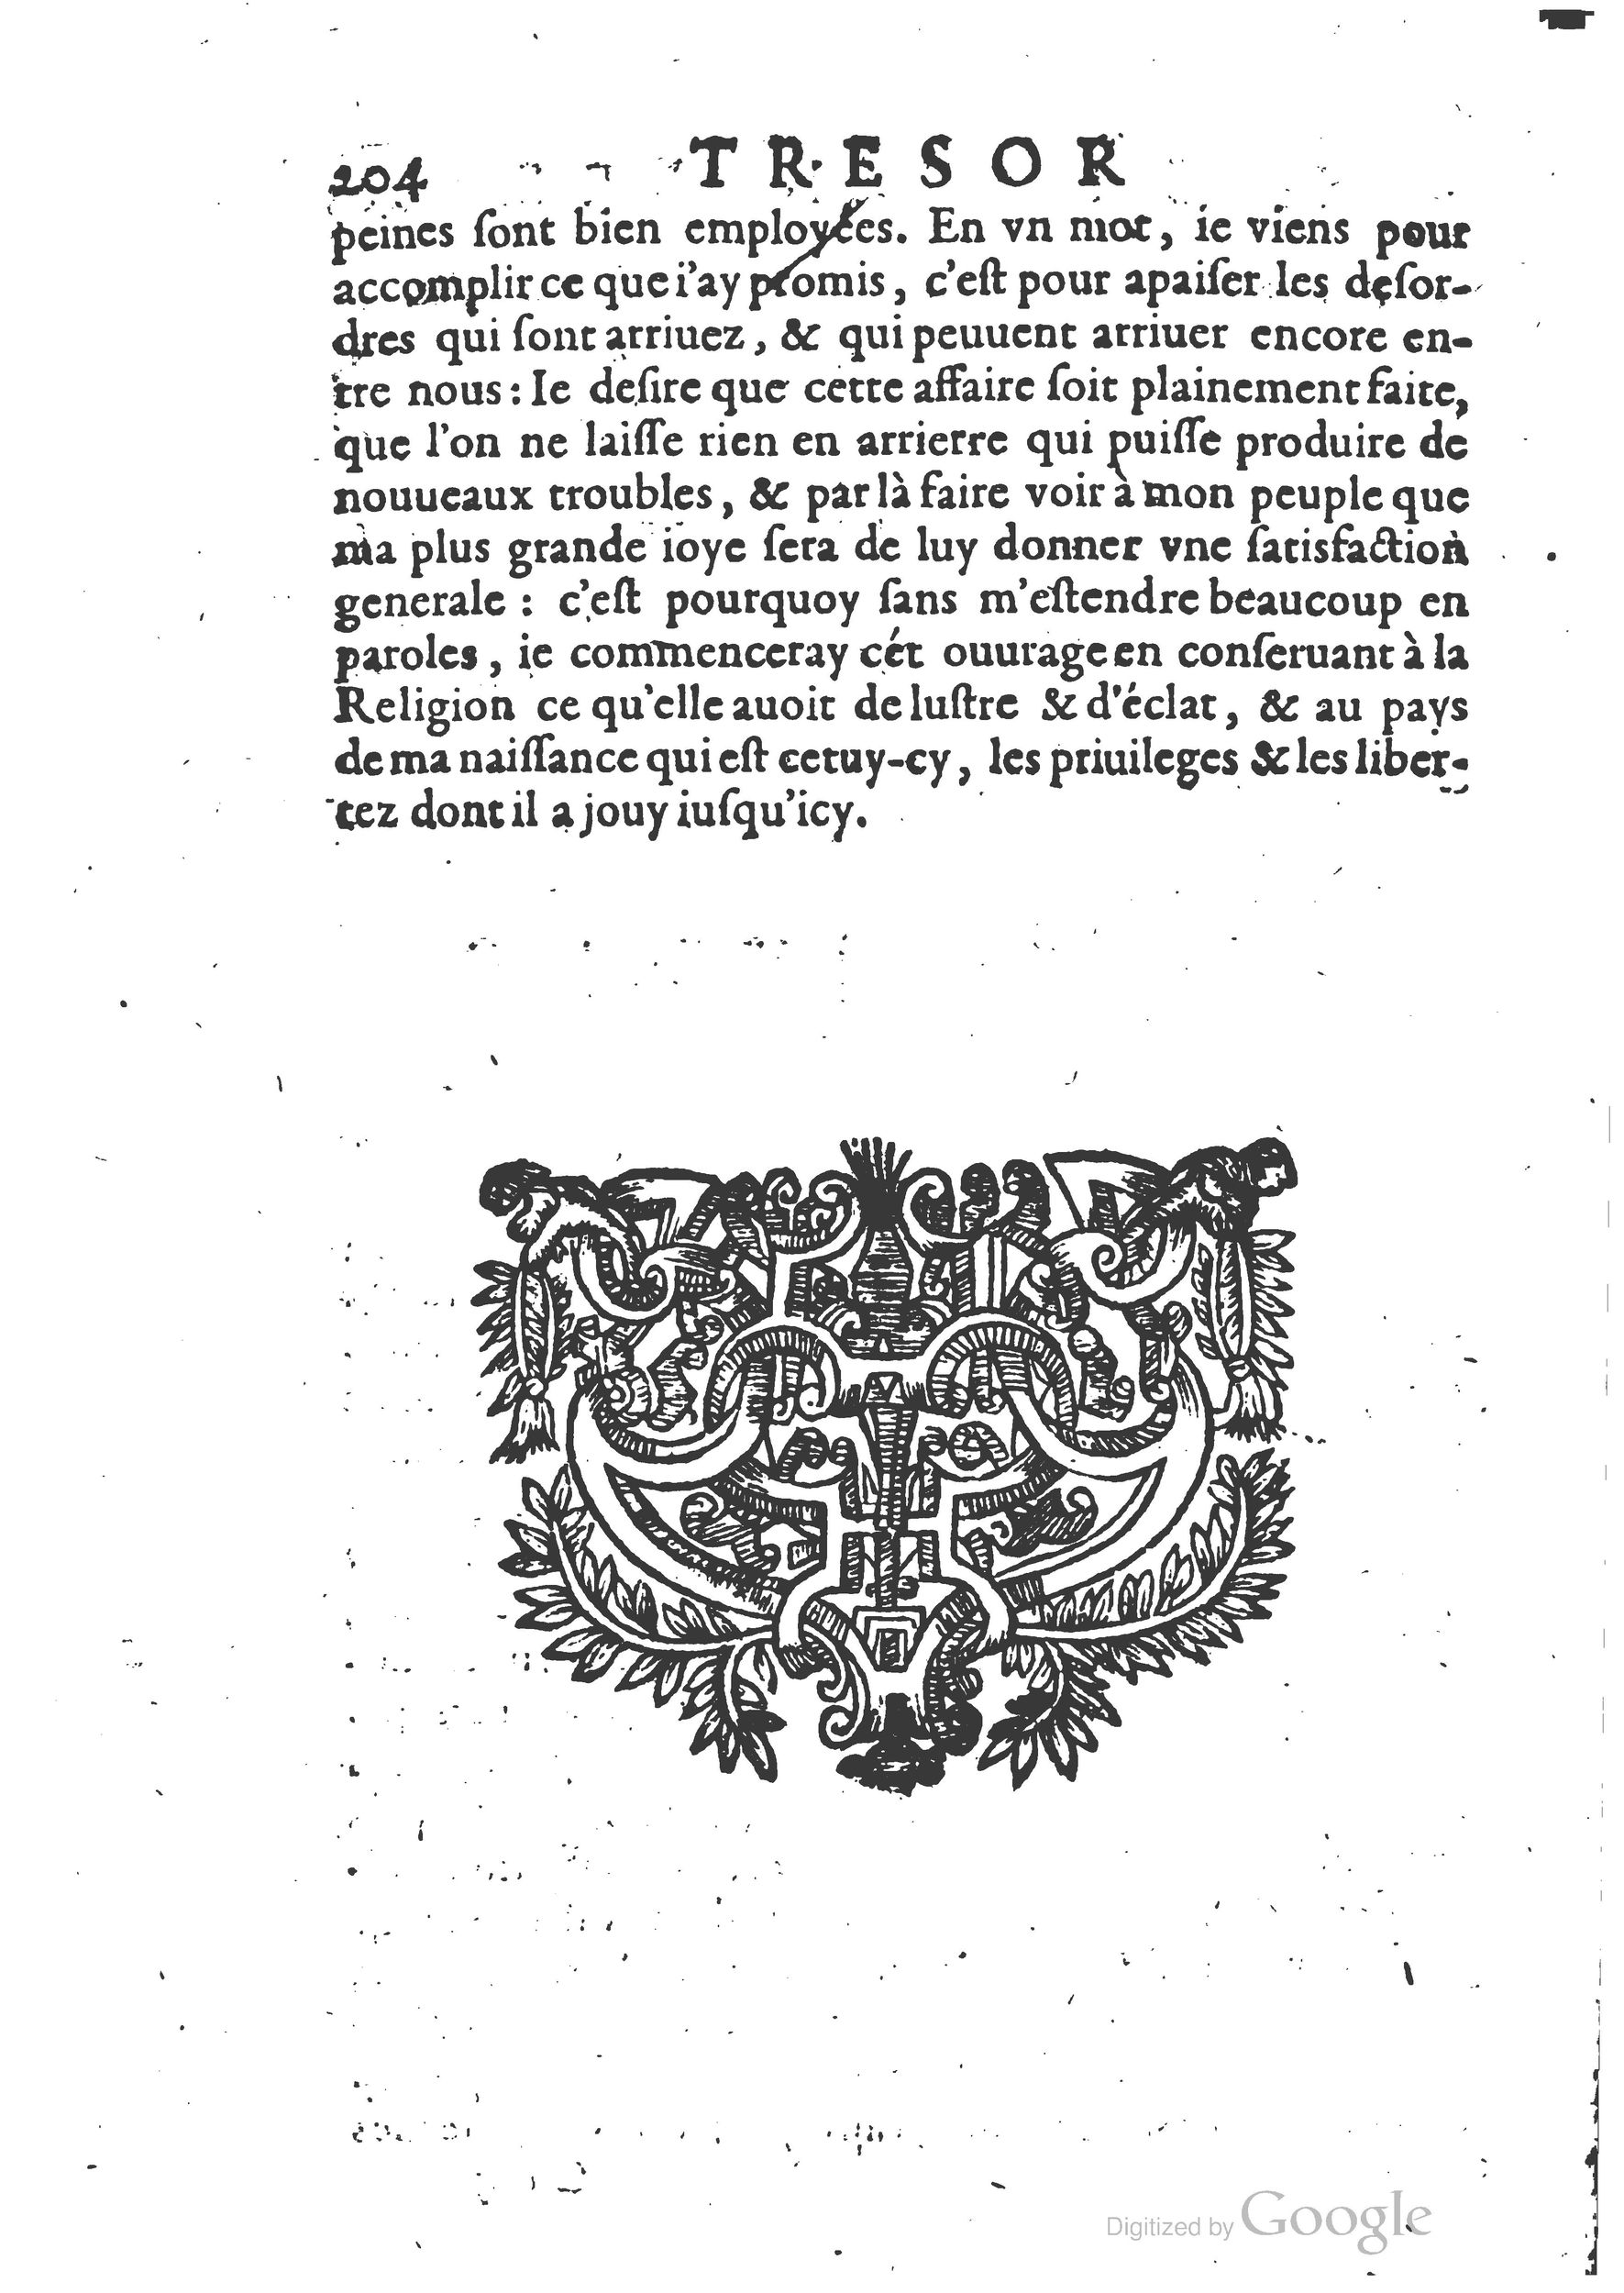 1654 Trésor des harangues, remontrances et oraisons funèbres Robin_BM Lyon_Page_223.jpg